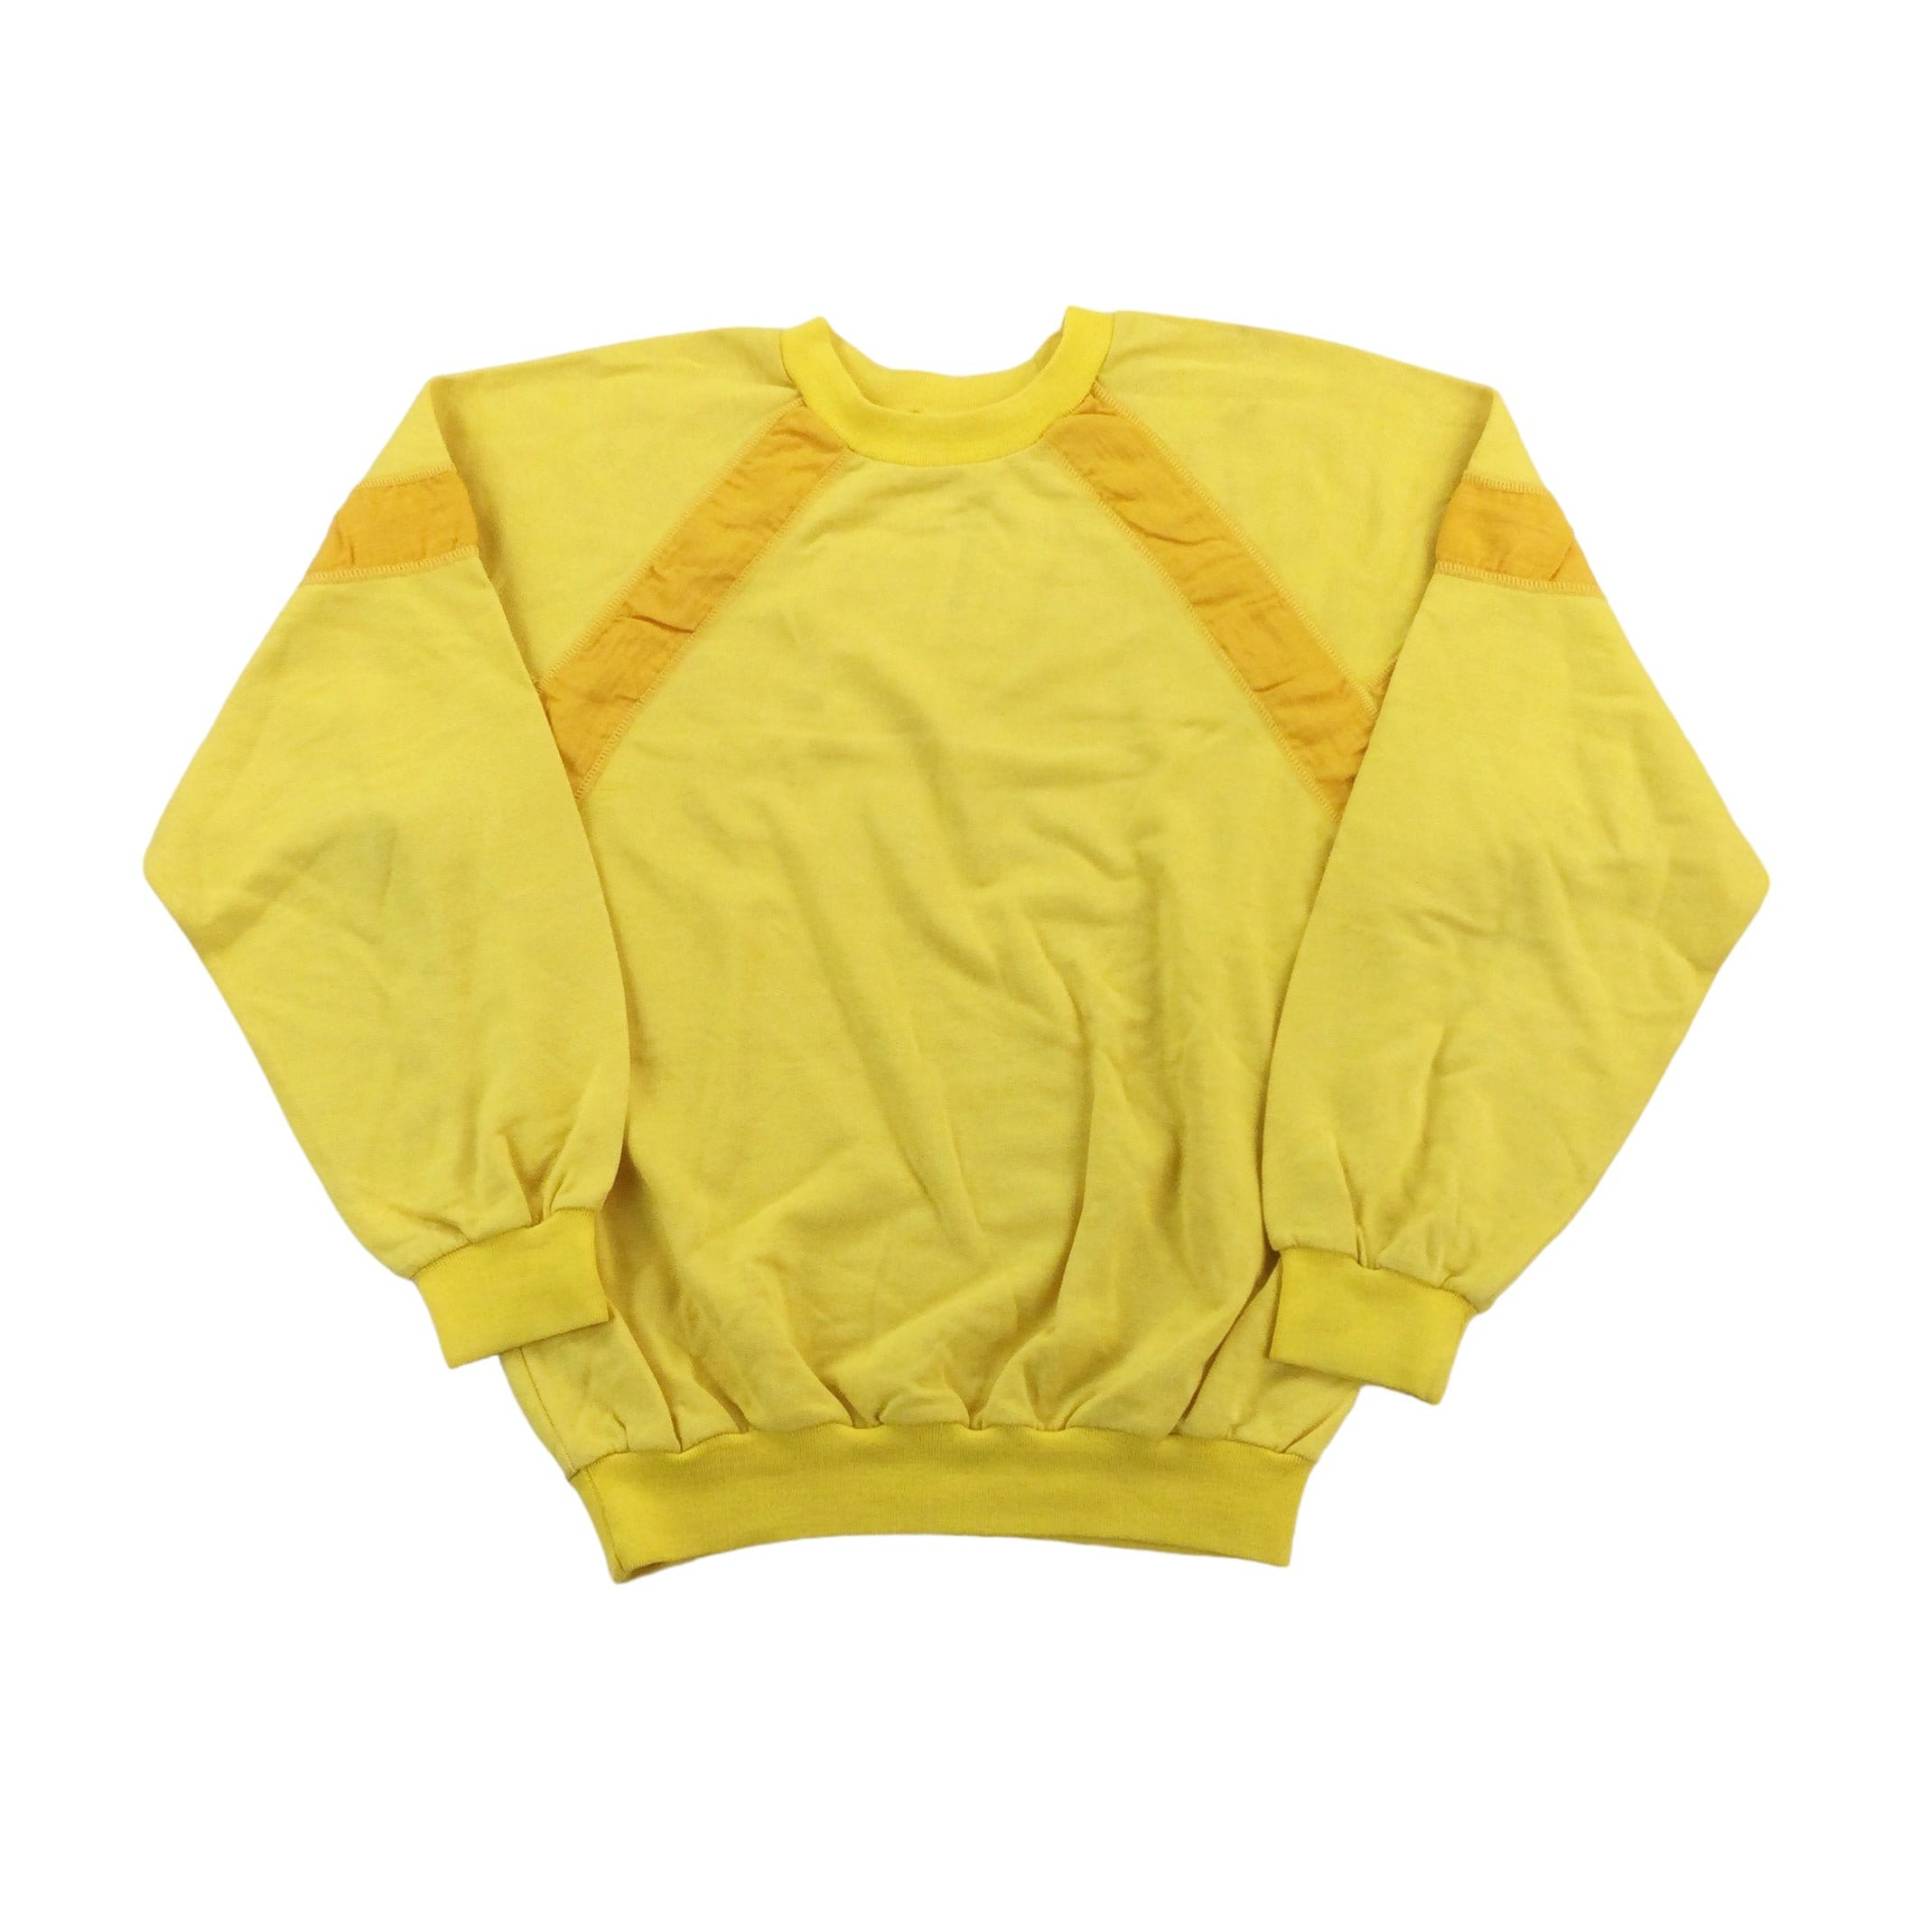 Vintage Jemme 80Er Jahre Sweatshirt - Kleine Größe Männer Pullover Gebraucht von aloisstudio